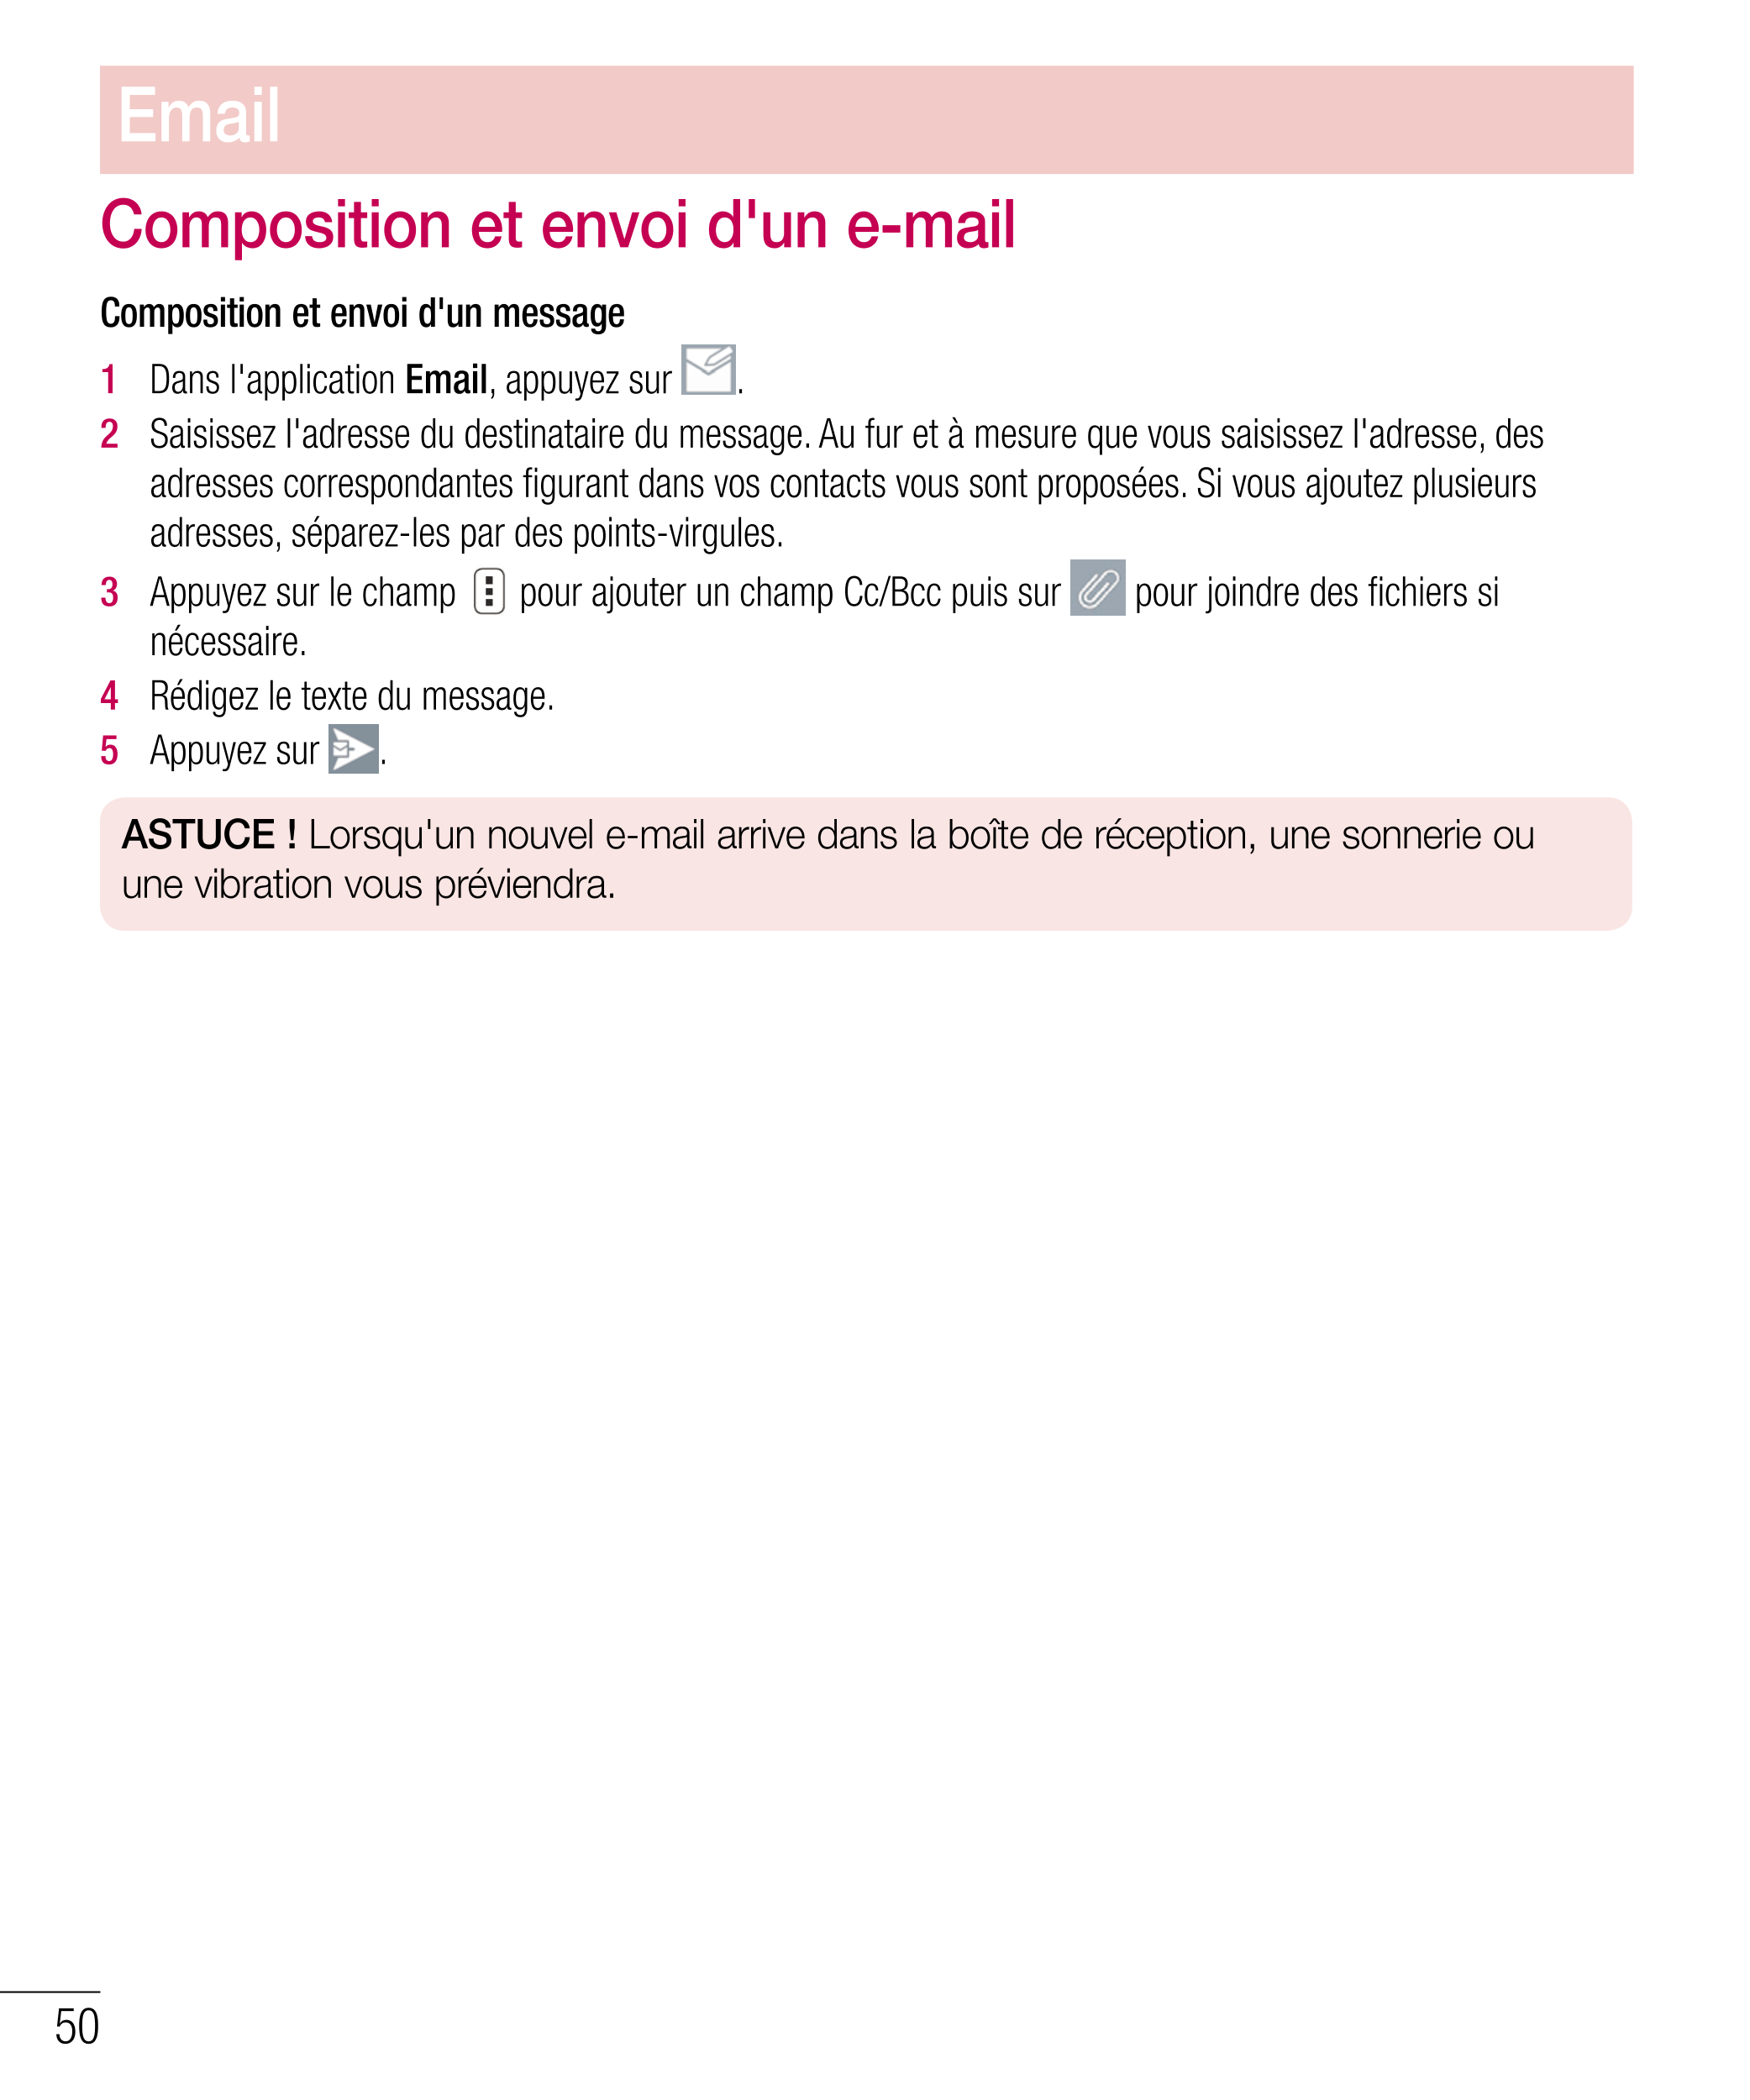 Email
Composition et envoi d'un e-mail
Composition et envoi d'un message
1   Dans l'application  Email, appuyez sur  .
2   Saisi